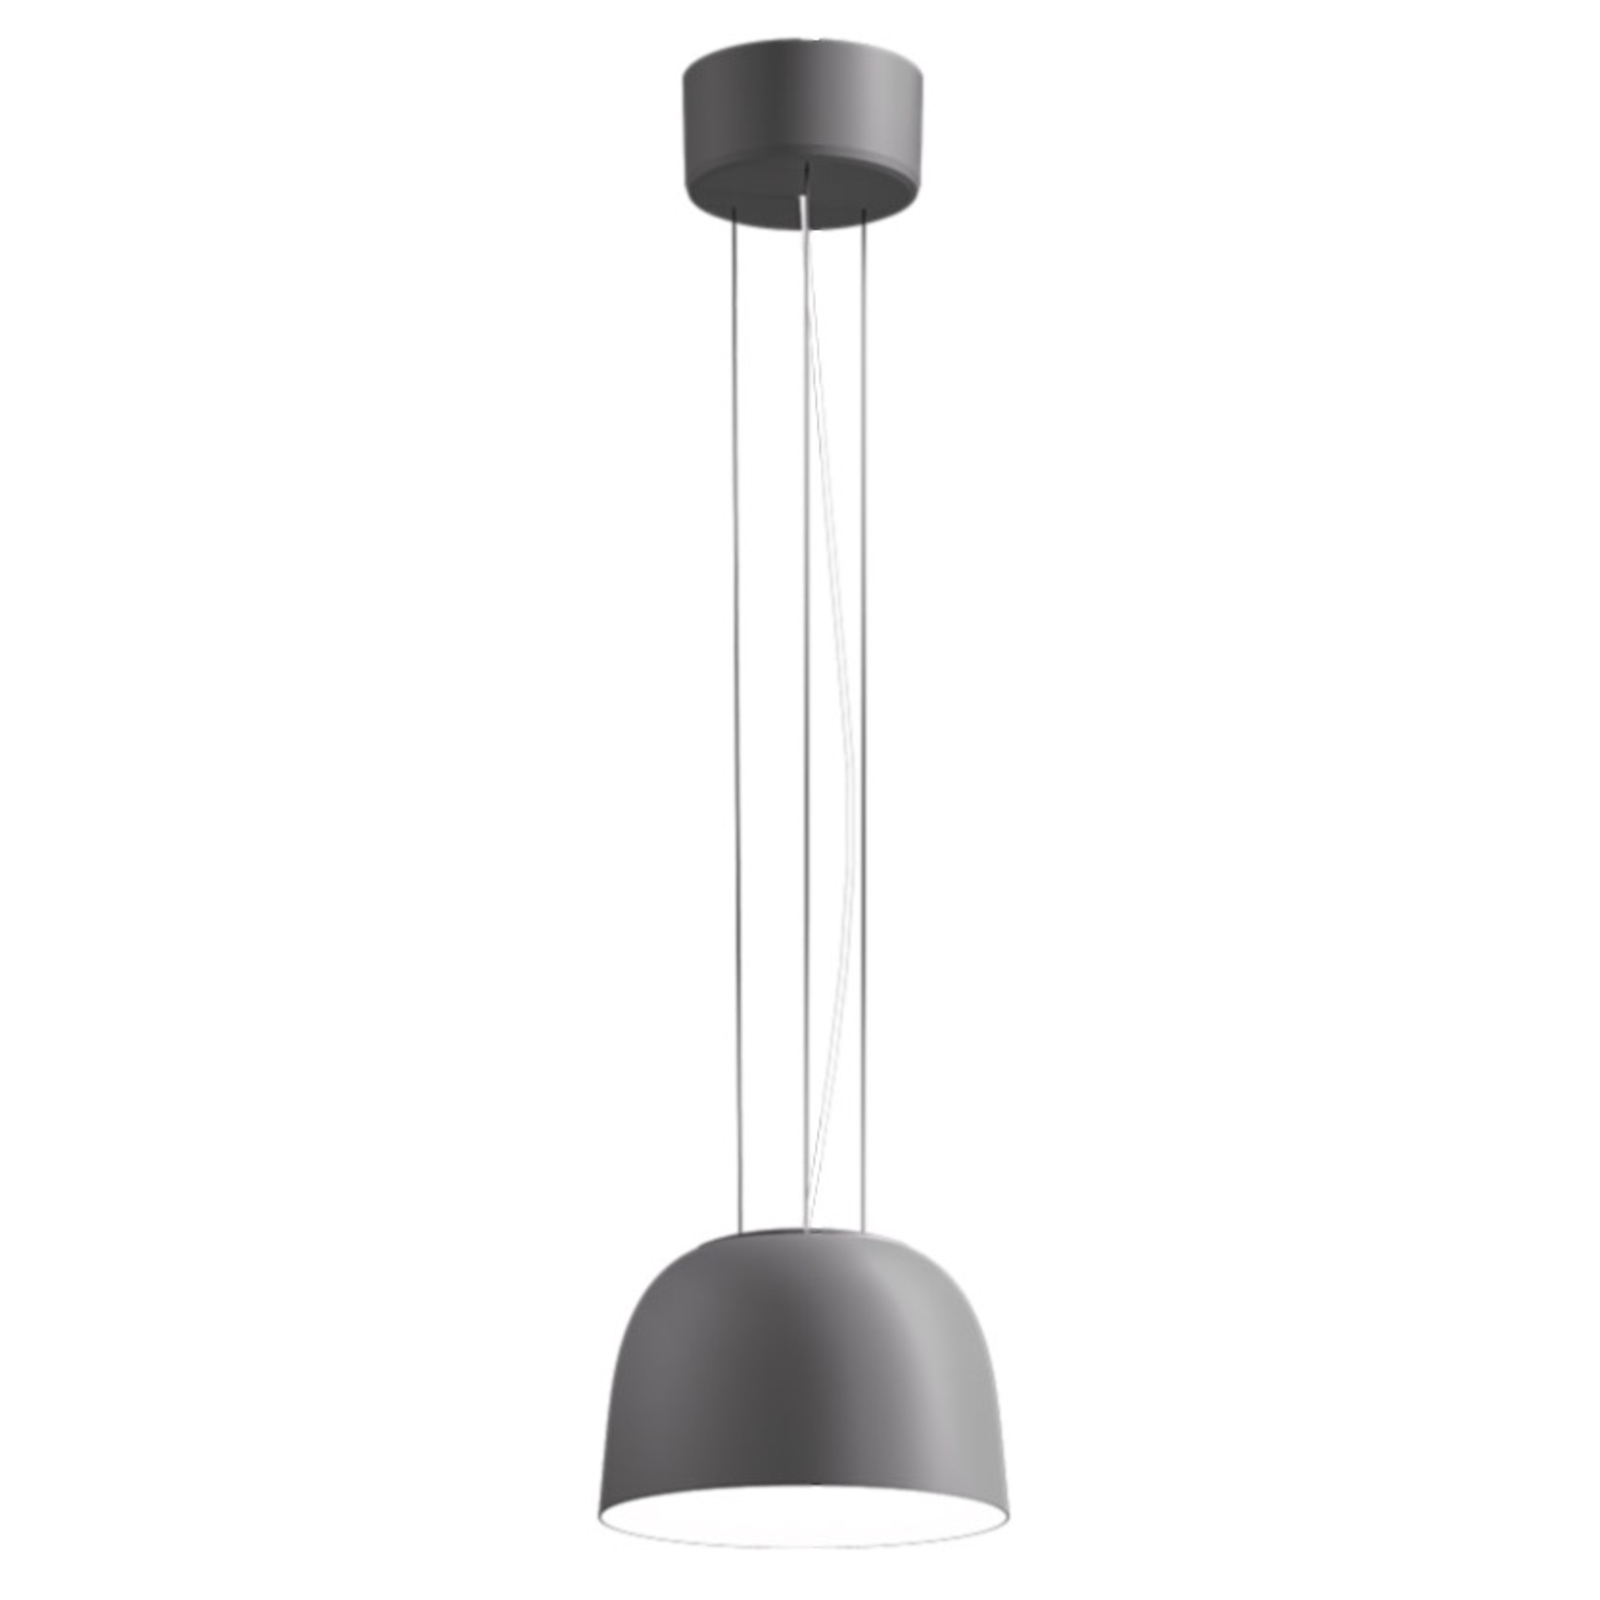 LED pakabinamas šviestuvas Sva 840 Dali Ø 24,4cm sidabriškai pilkos spalvos